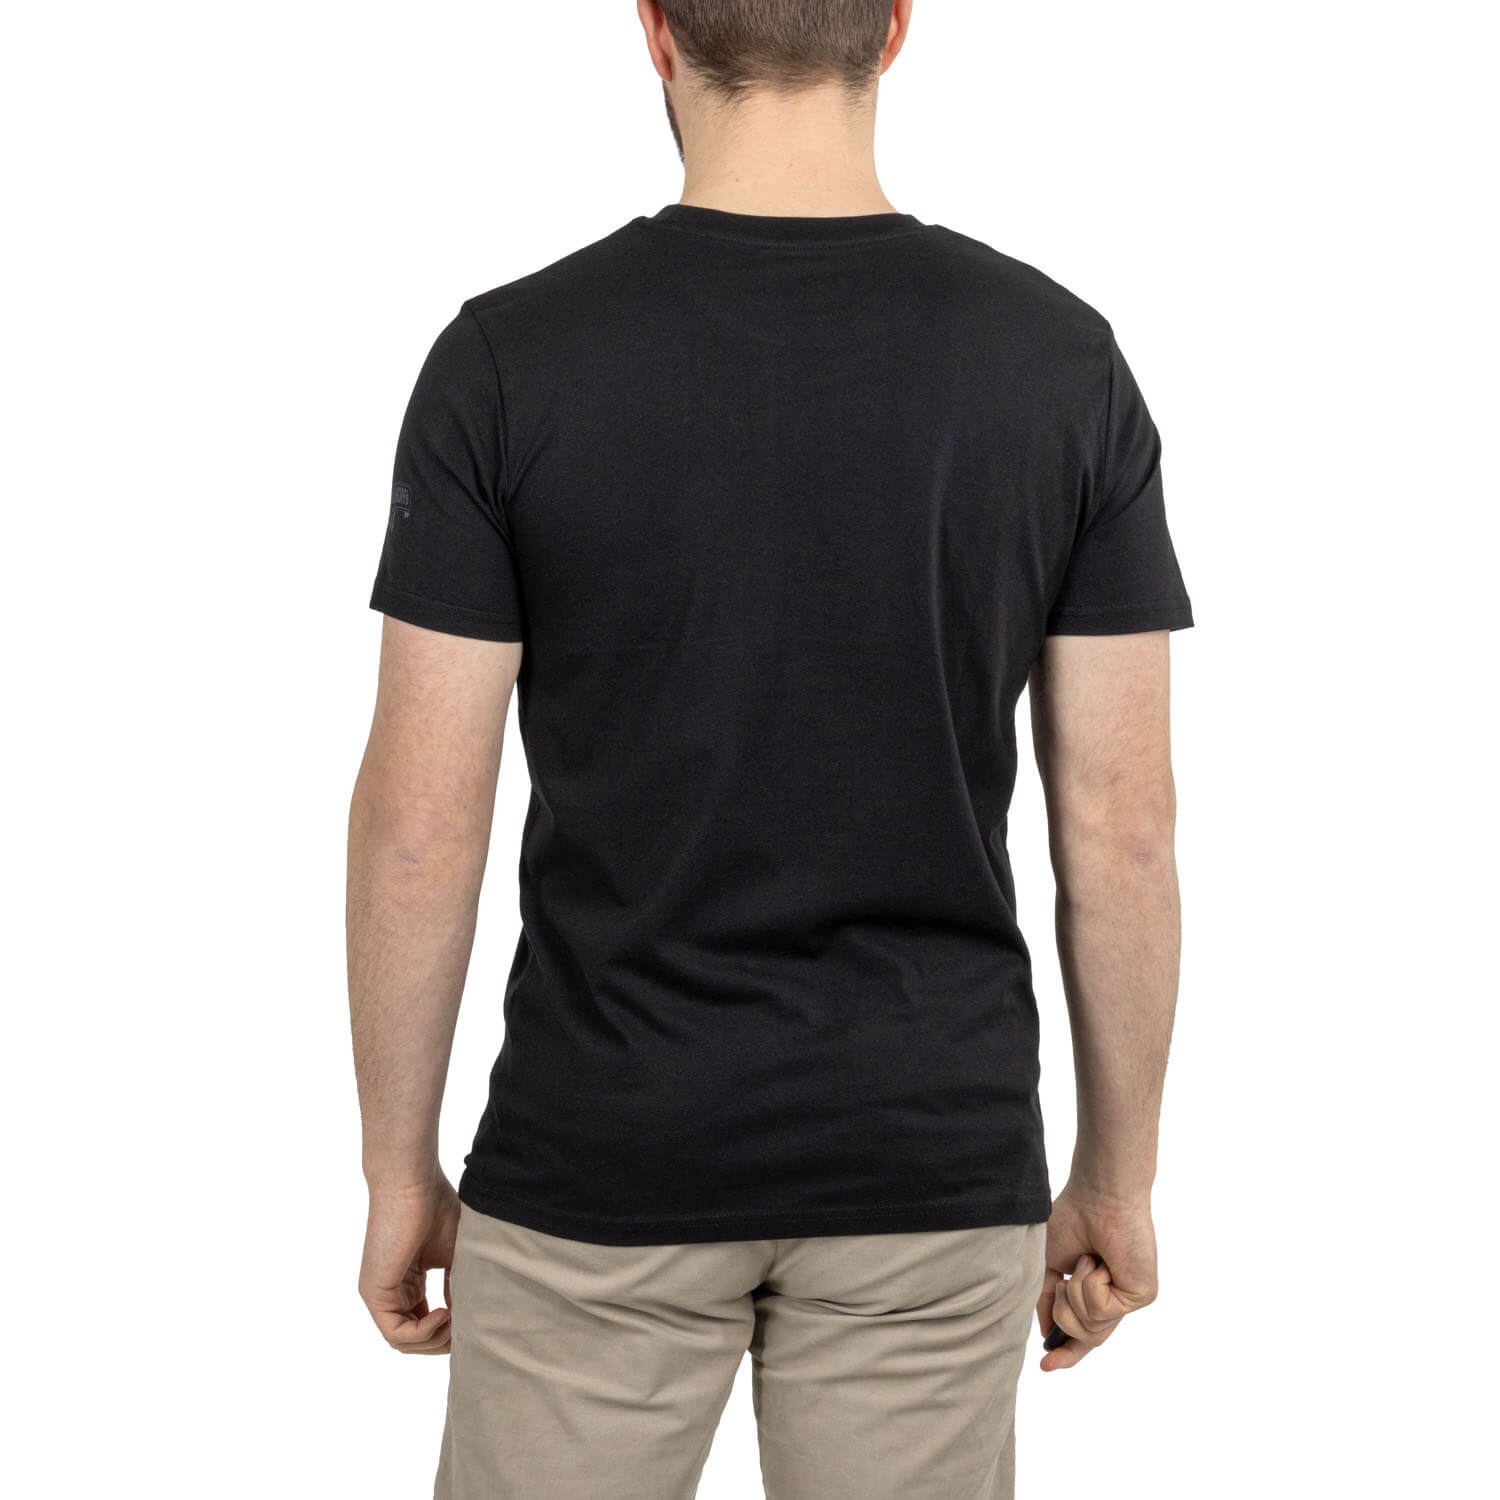 Brinkhoff's T-Shirt "No1"